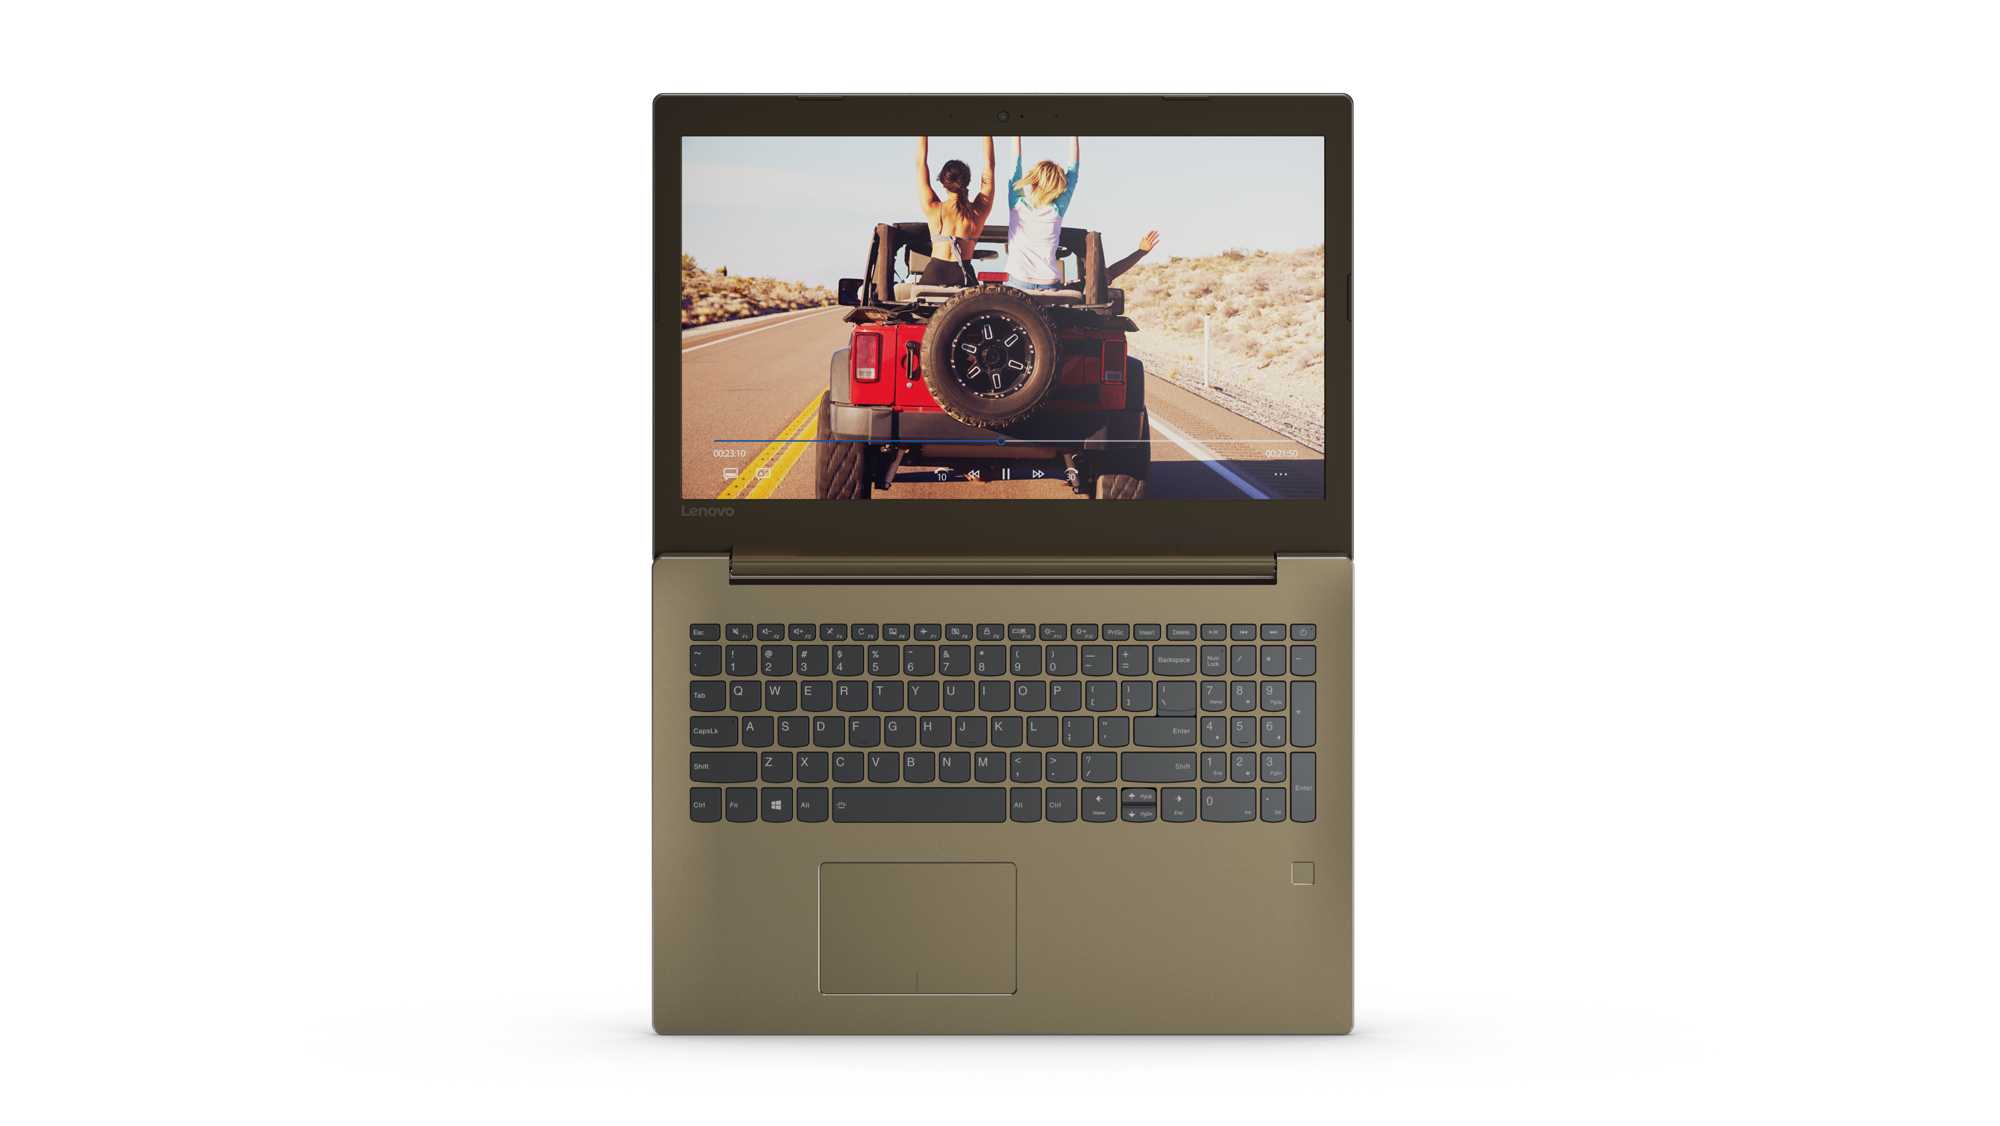 Ноутбук lenovo ideapad 5 520-15ikb (81bf00euru) — купить, цена и характеристики, отзывы